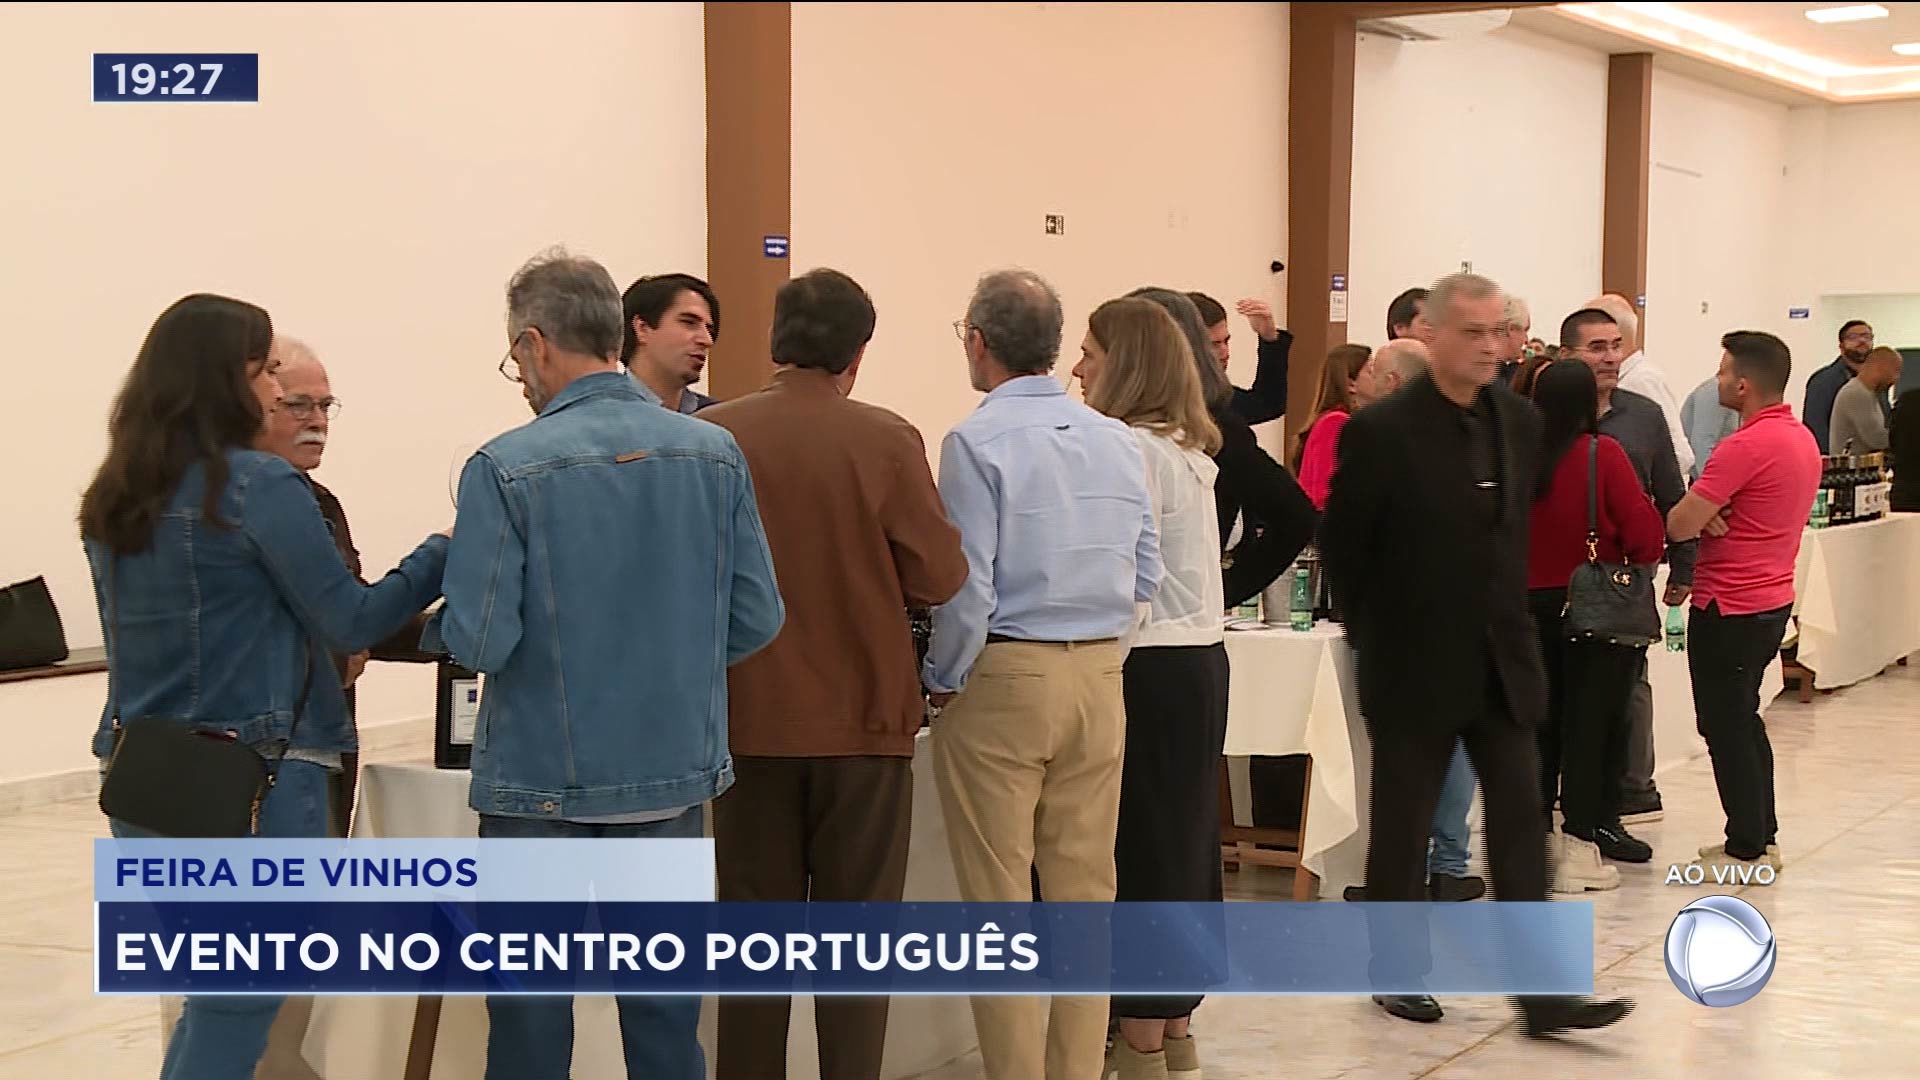 Vídeo: Feira de vinhos portugueses com mais de 50 rótulos